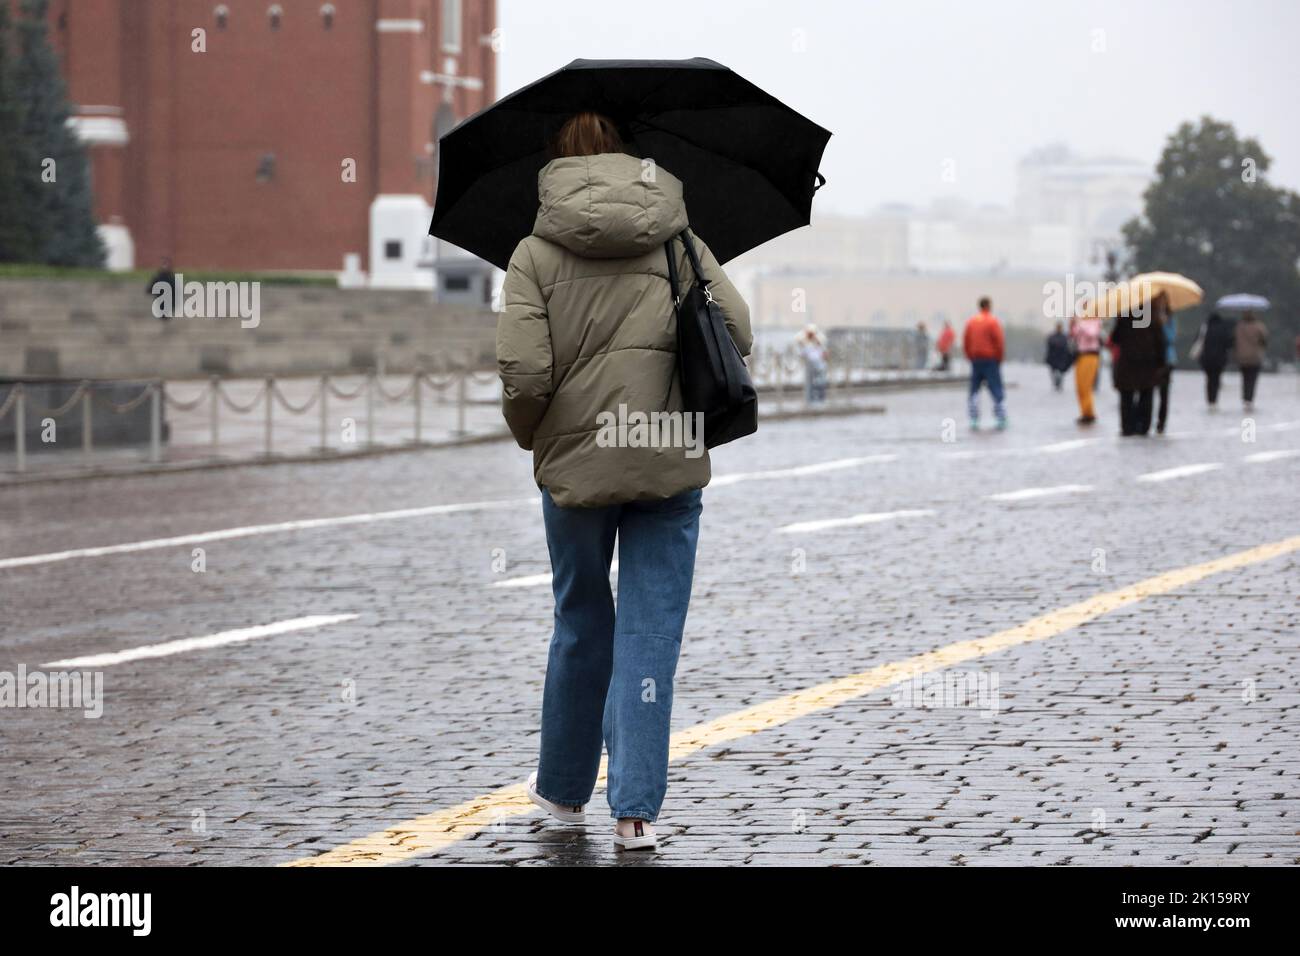 Lluvia en la ciudad, chica delgada en jeans y chaqueta con sombrilla negra en una calle. Día nublado, tiempo lluvioso en otoño Foto de stock